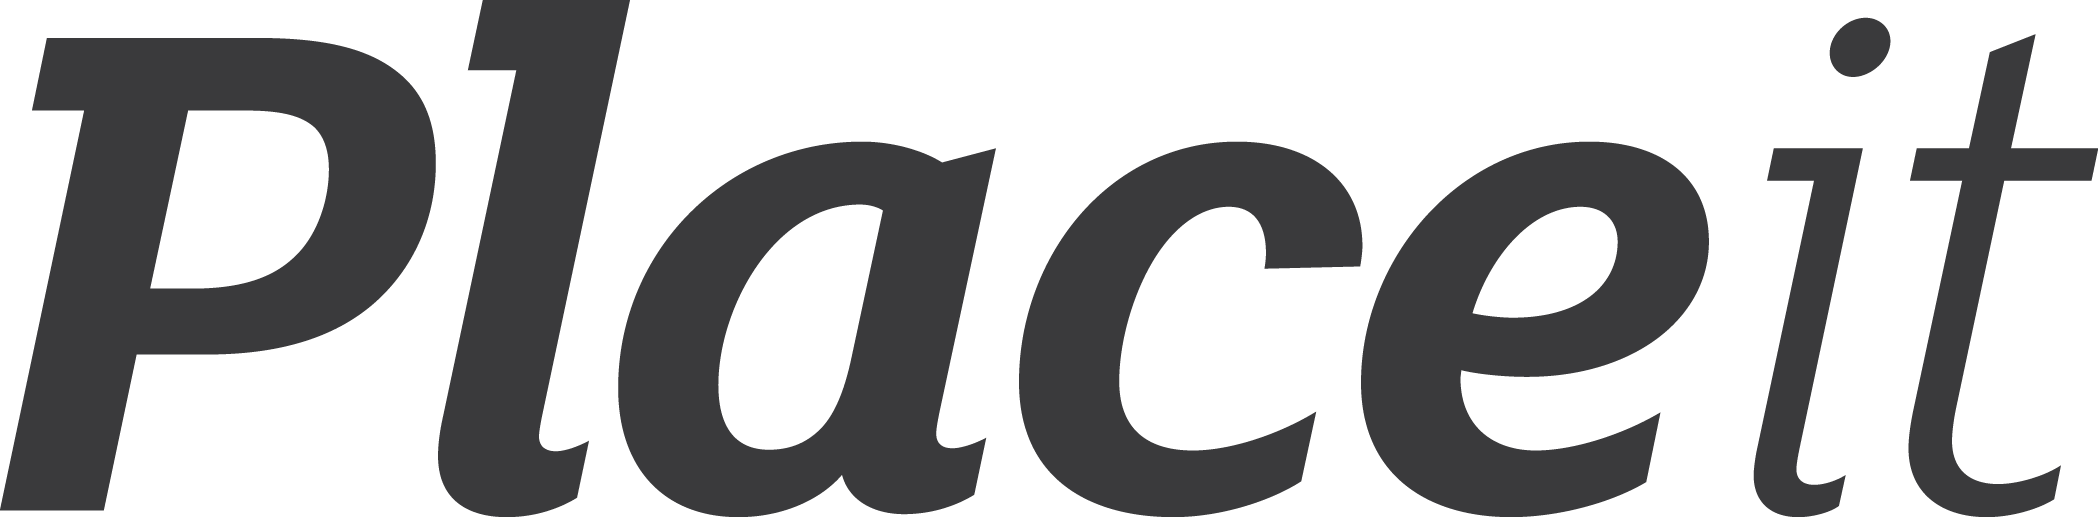 Placeit Net Logo (2098x517)